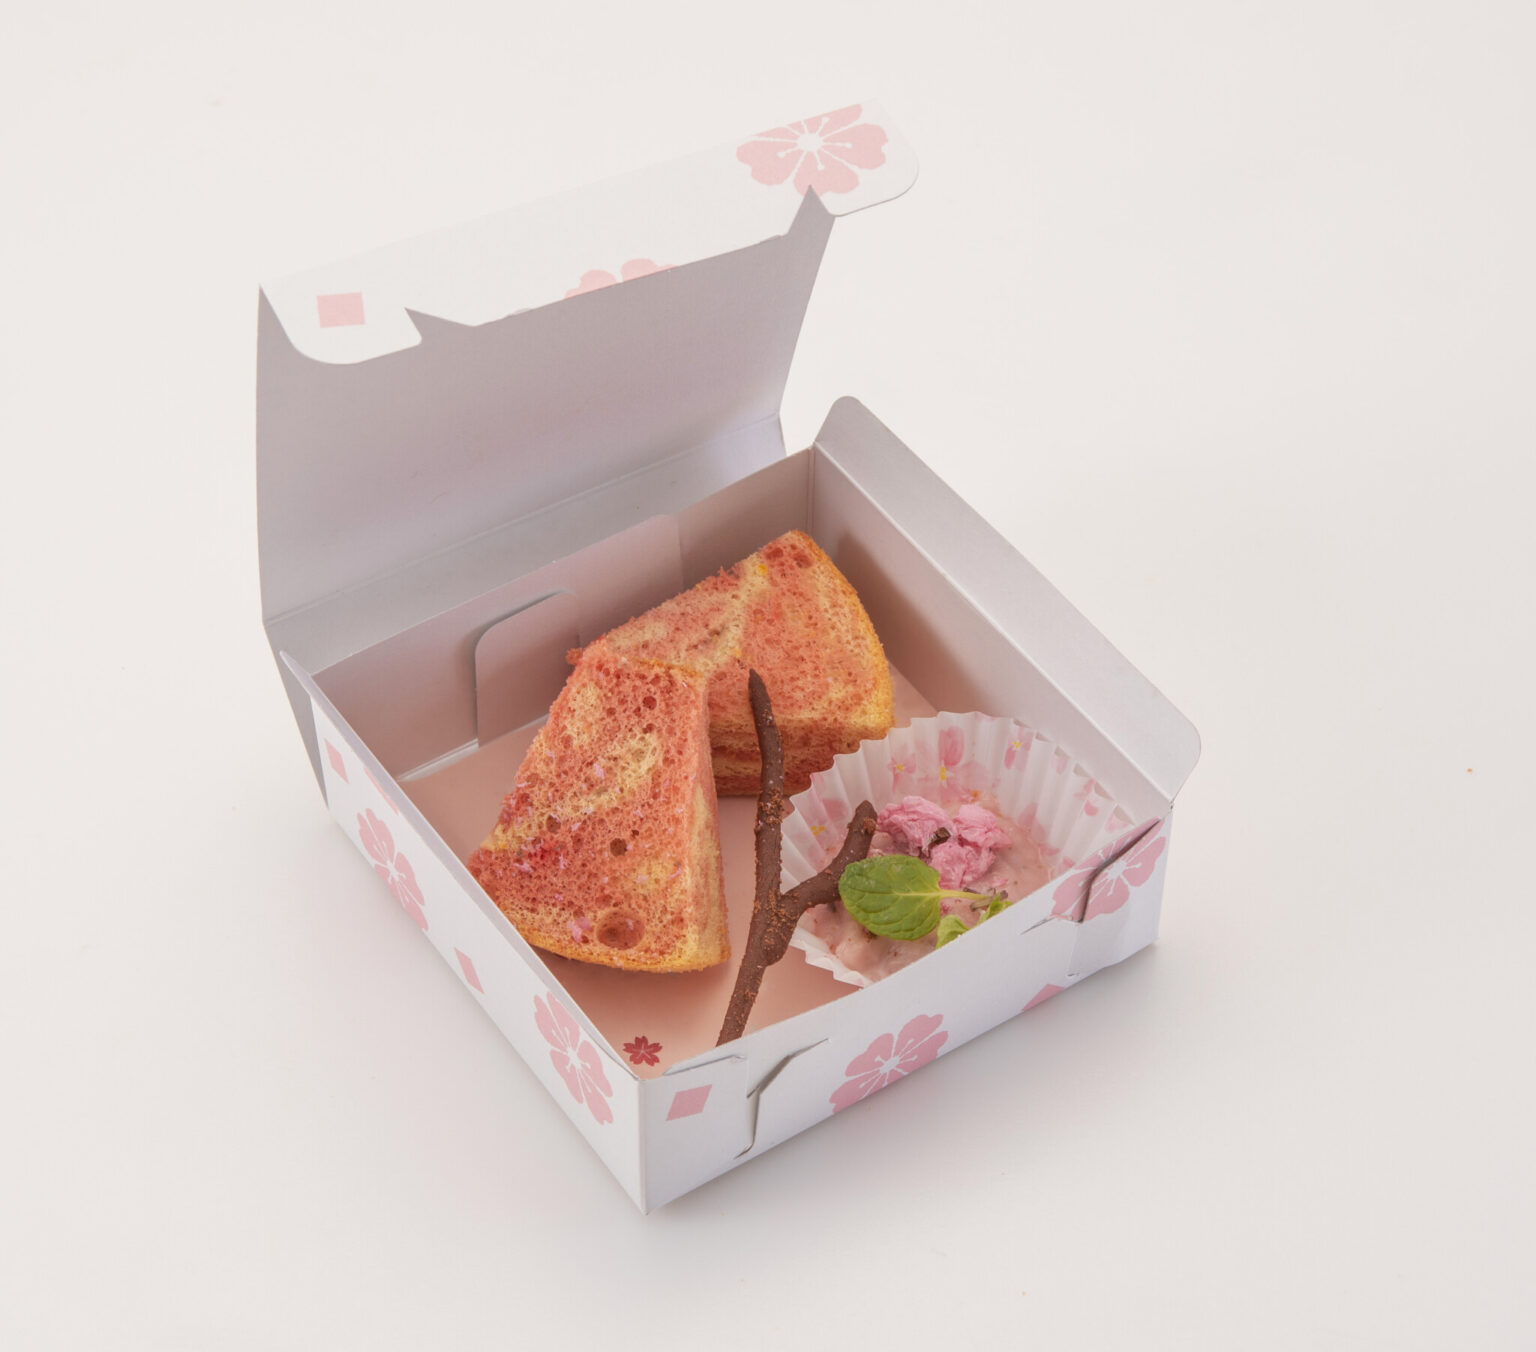 さくらシフォンケーキ（by B1 BROWN RICE MEALS）
ピンクのマーブル模様が華やかな桜風味のグルテンフリーシフォンケーキ。500円。